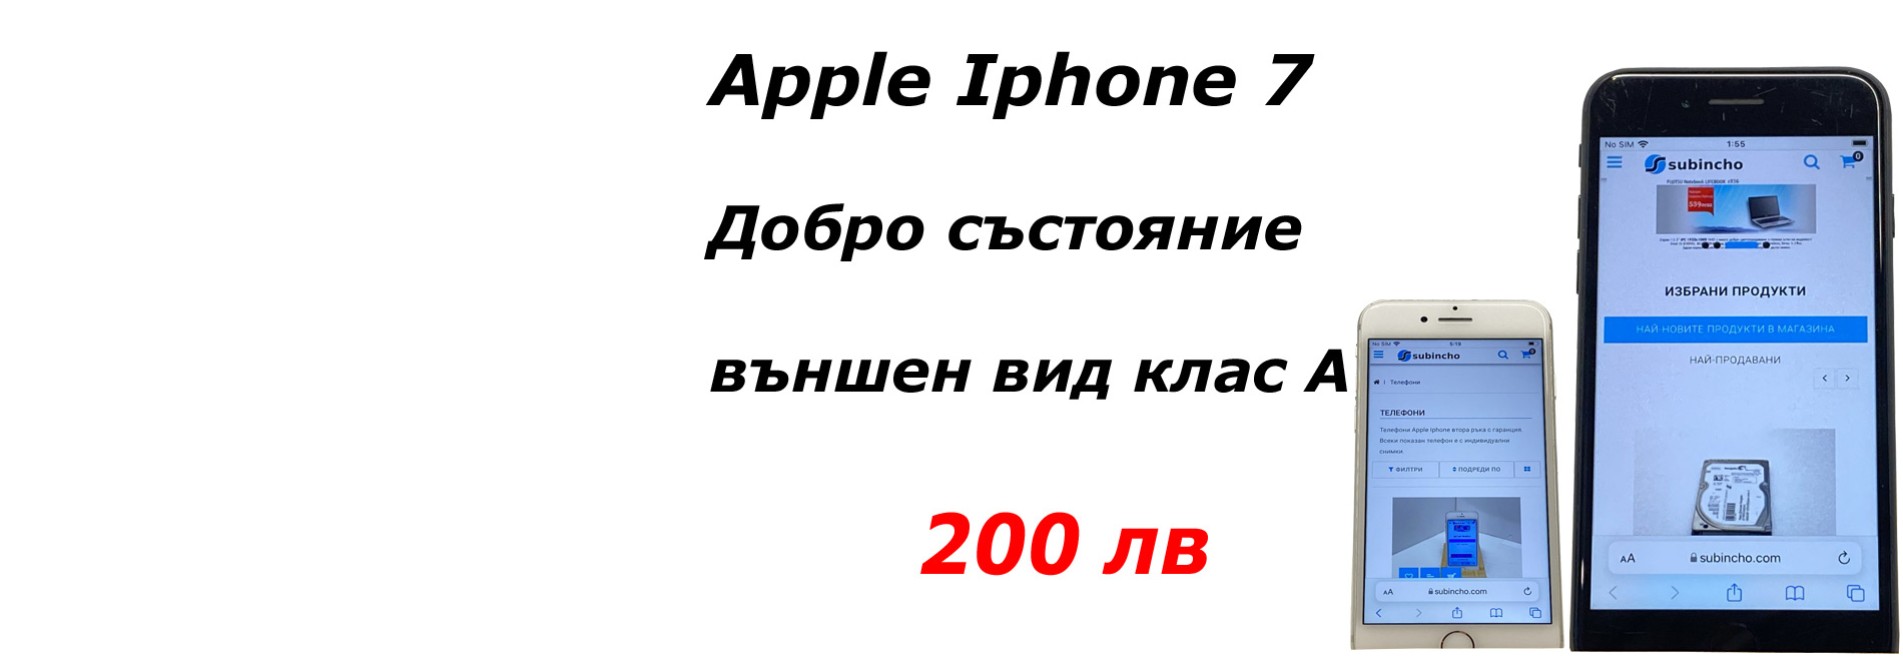 Apple Iphone телефони втора ръка